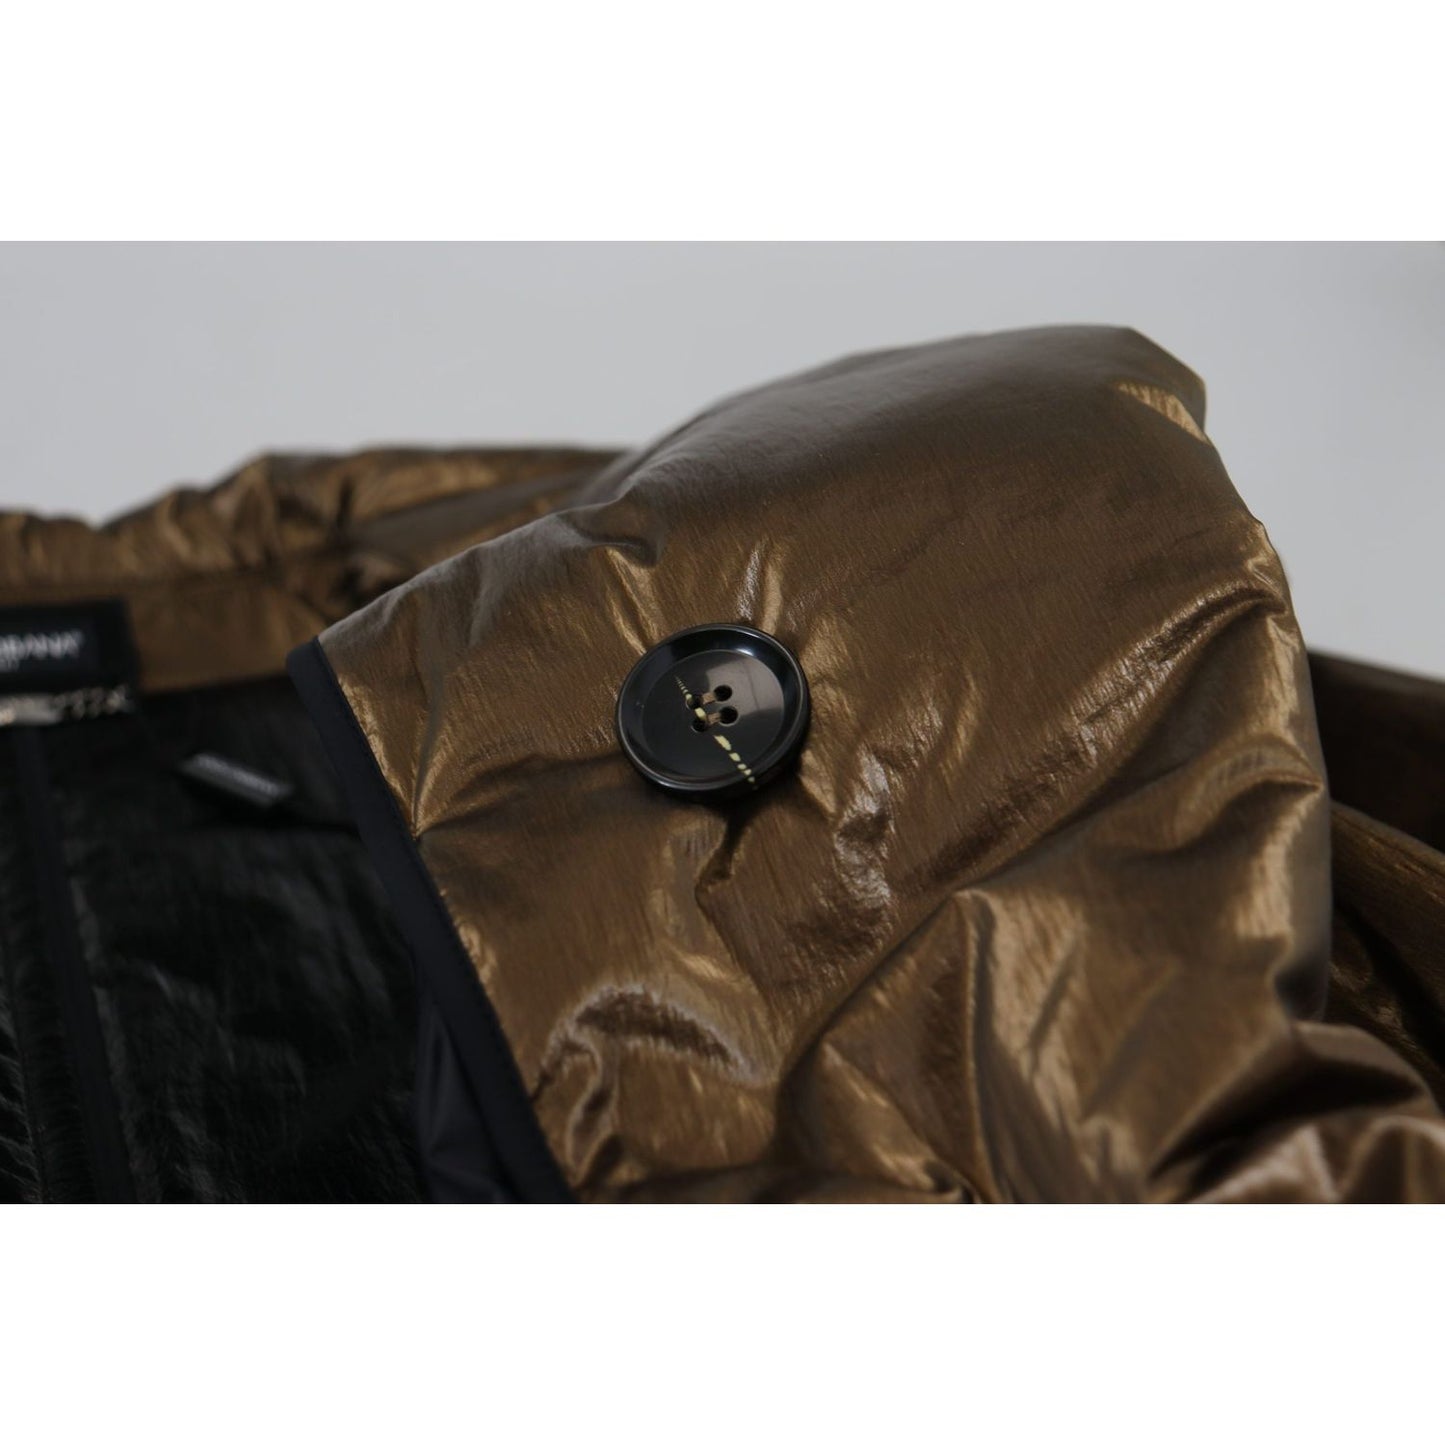 Dolce & Gabbana Elegant Bronze Double-Breasted Jacket bronze-nylon-collar-double-breasted-jacket IMG_8655-scaled-4eaf45c4-cd6.jpg